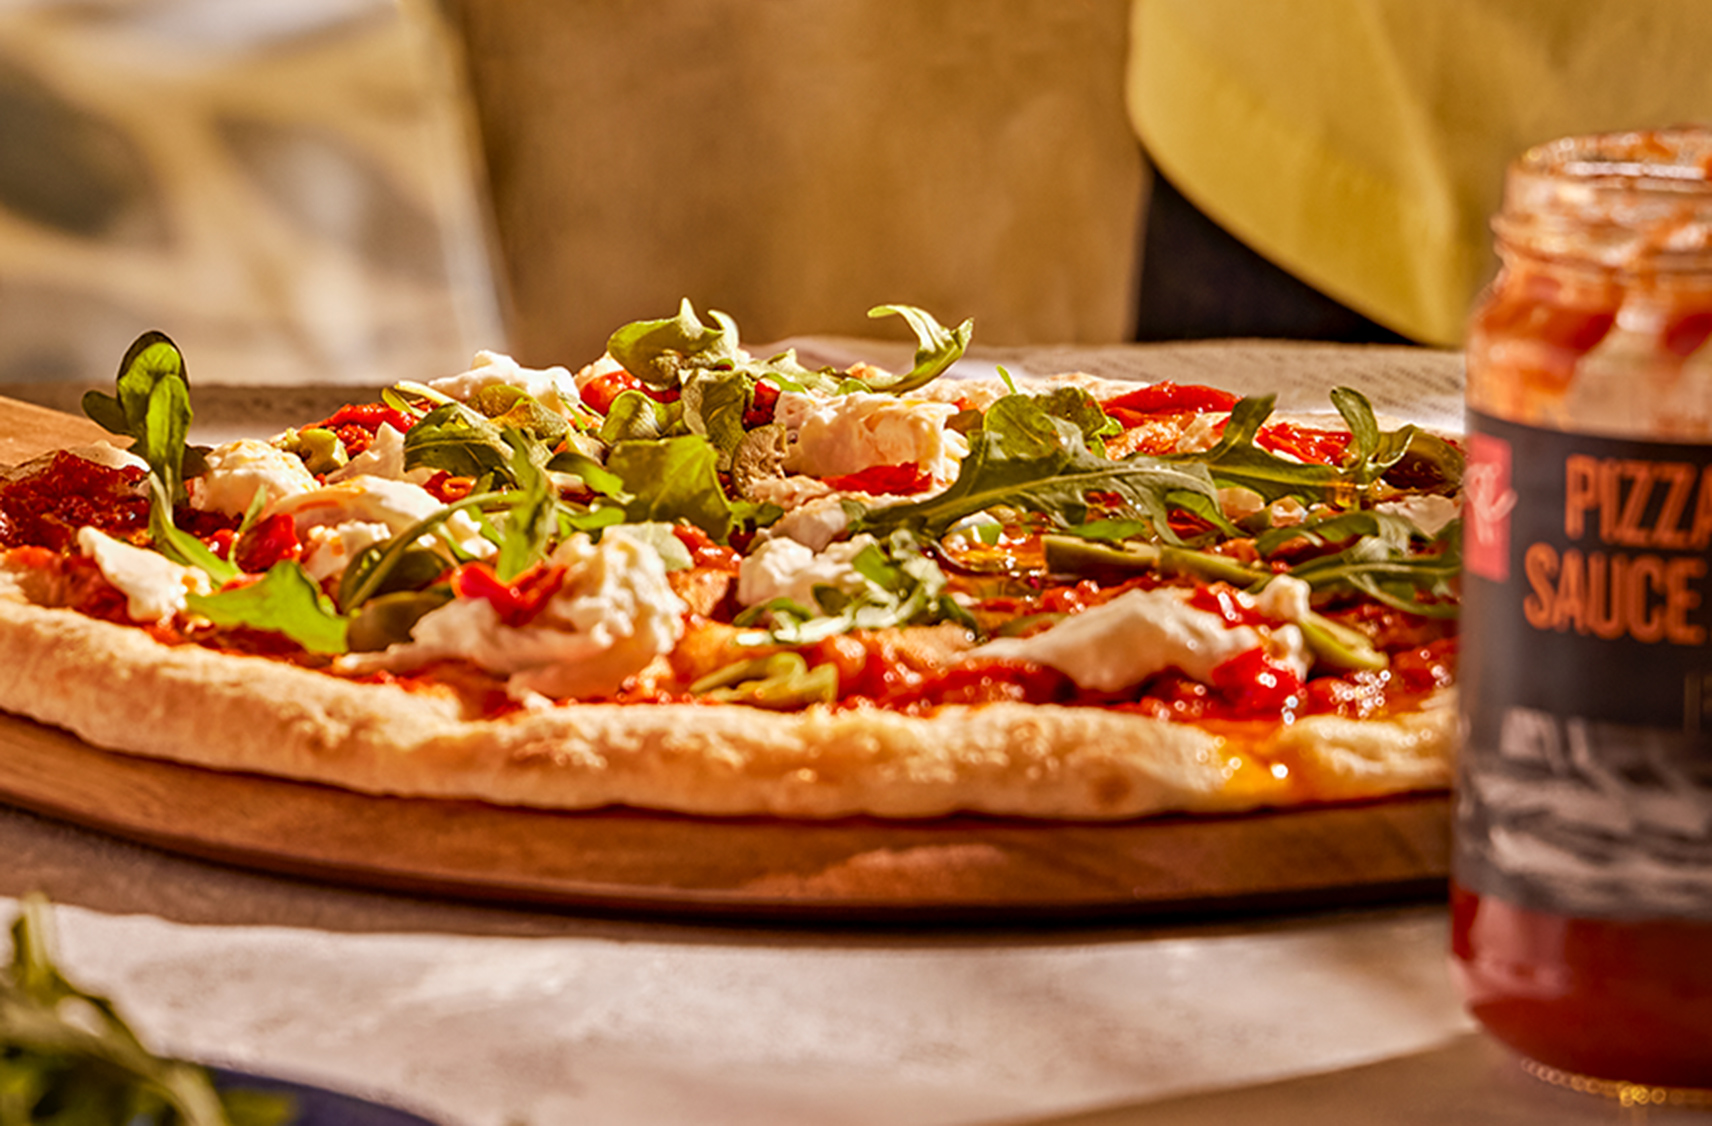 Le Four à Pizza PC est visible au loin, une main arrose d’huile de piment peperoncino une pizza fraîchement cuite, à côté d’un pot de sauce à pizza, d’une salade et de quelques boissons.